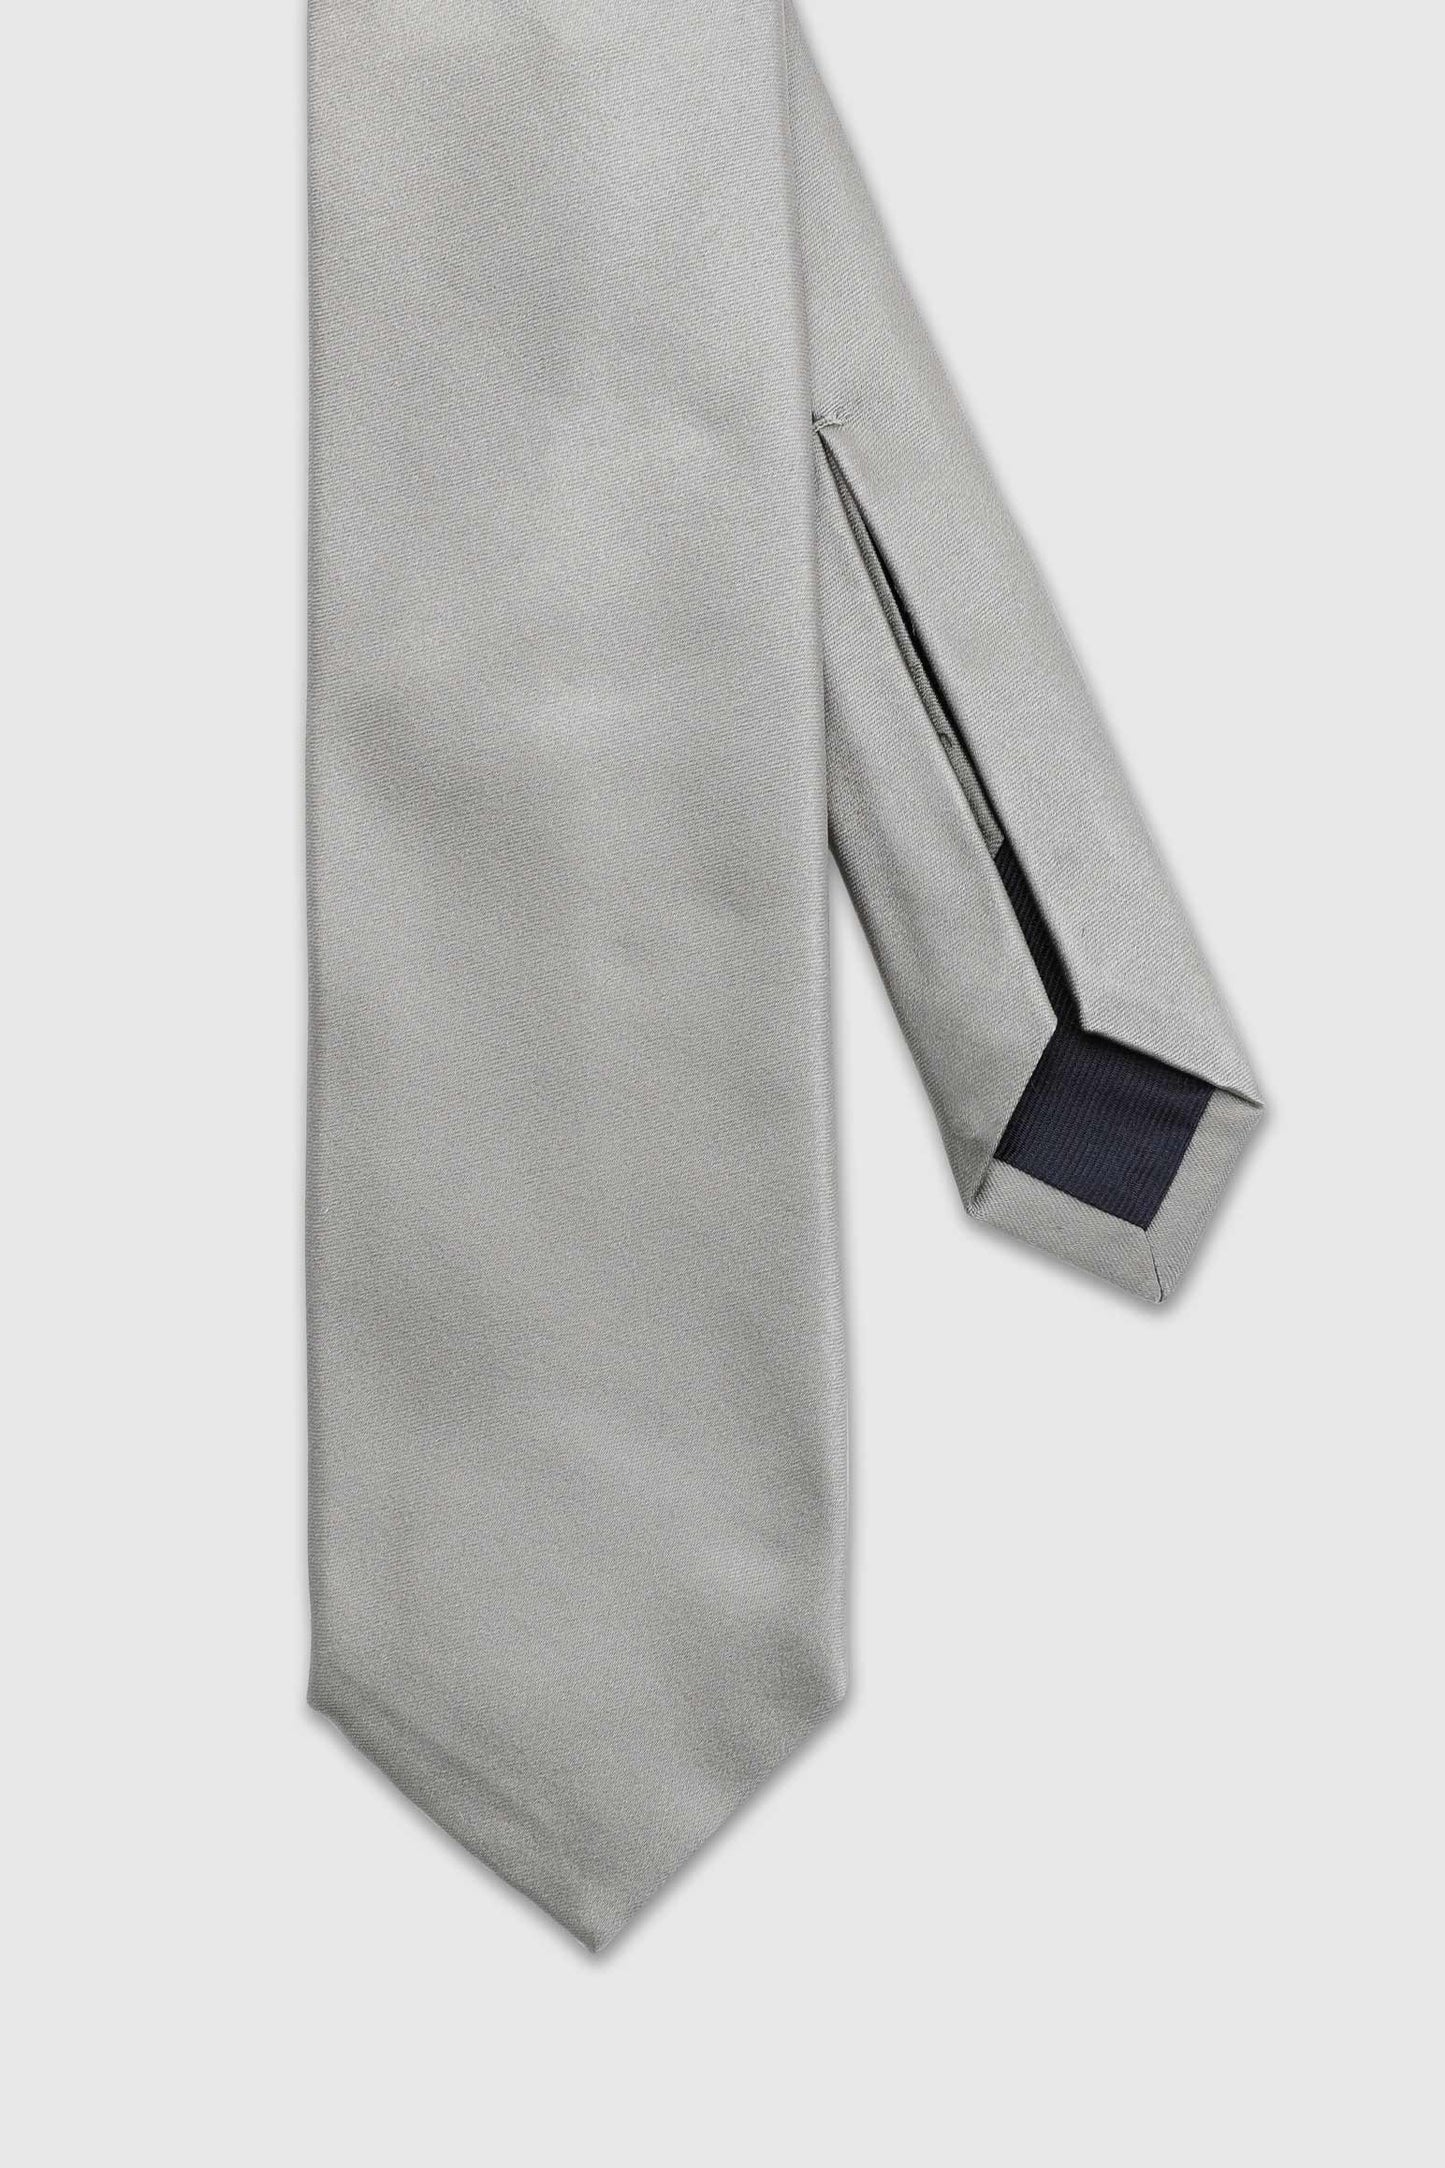 7-fach gefaltete Seidensatin-Krawatte in Silbergrau